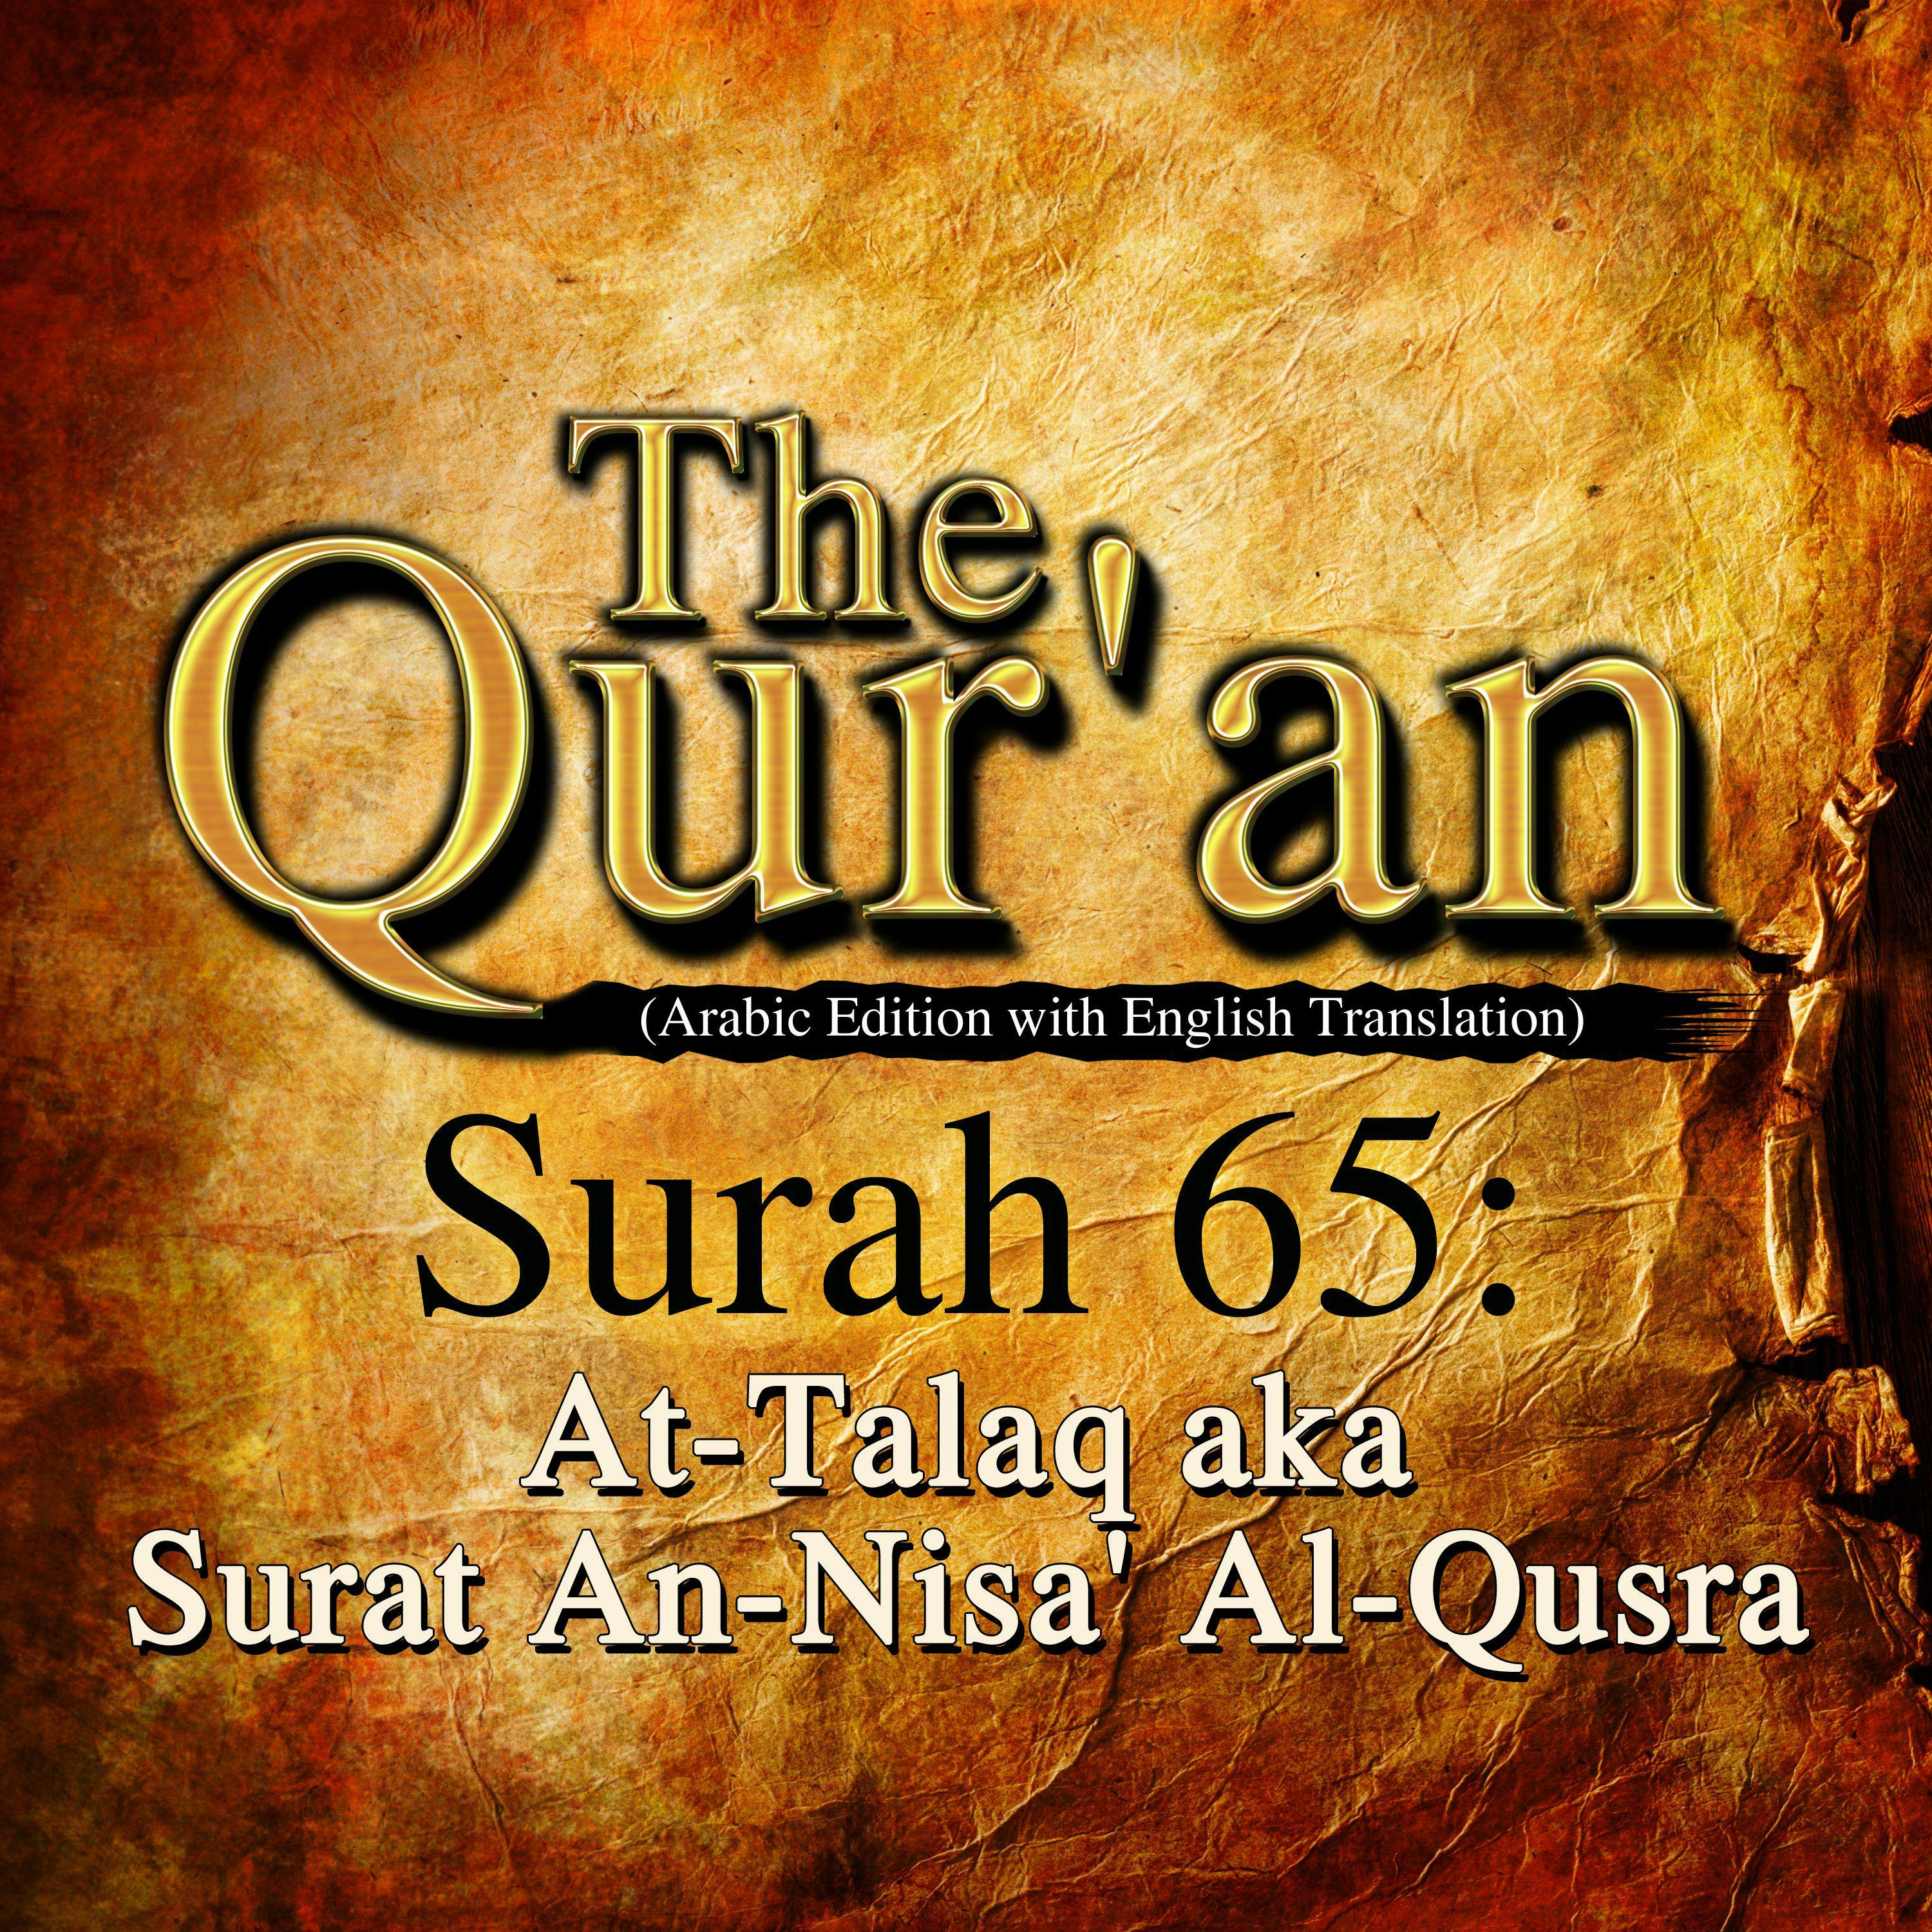 The Qur'an: Surah 65: At-Talaq, aka Surat An-Nisa' Al-Qusra - One Media iP LTD